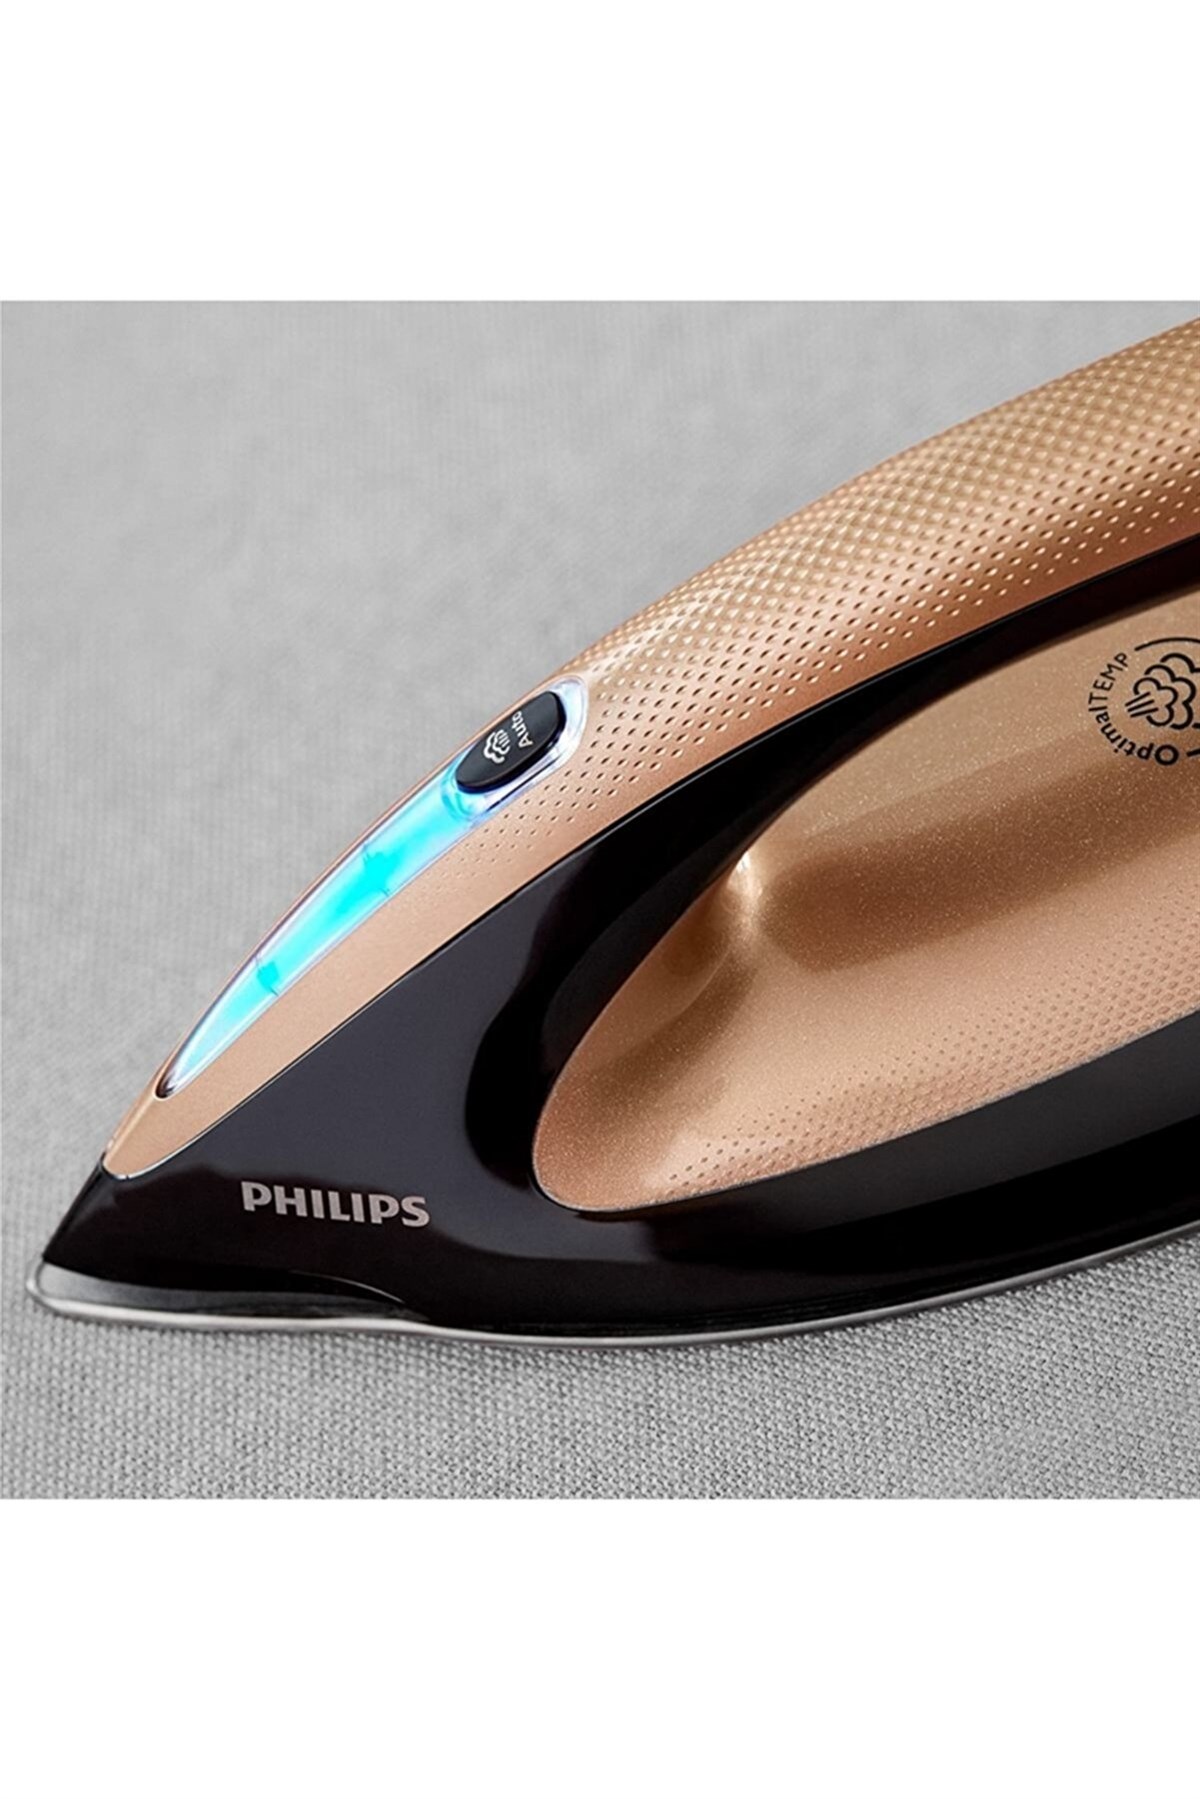 Philips GC9682/80 PerfectCare Elite Plus 2700 W Buhar Kazanlı Ütü